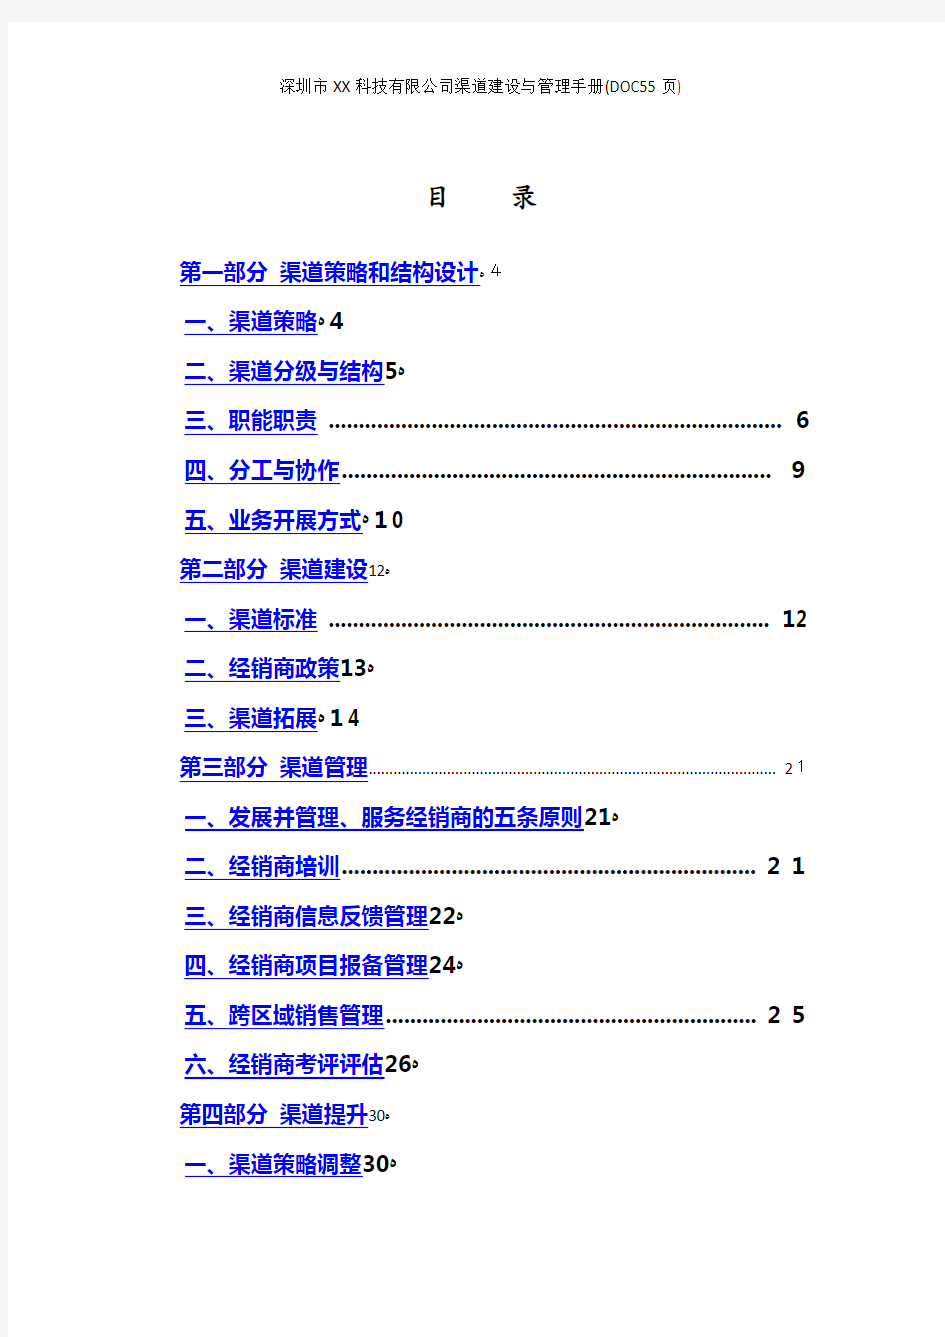 深圳市XX科技有限公司渠道建设与管理手册(DOC55页)